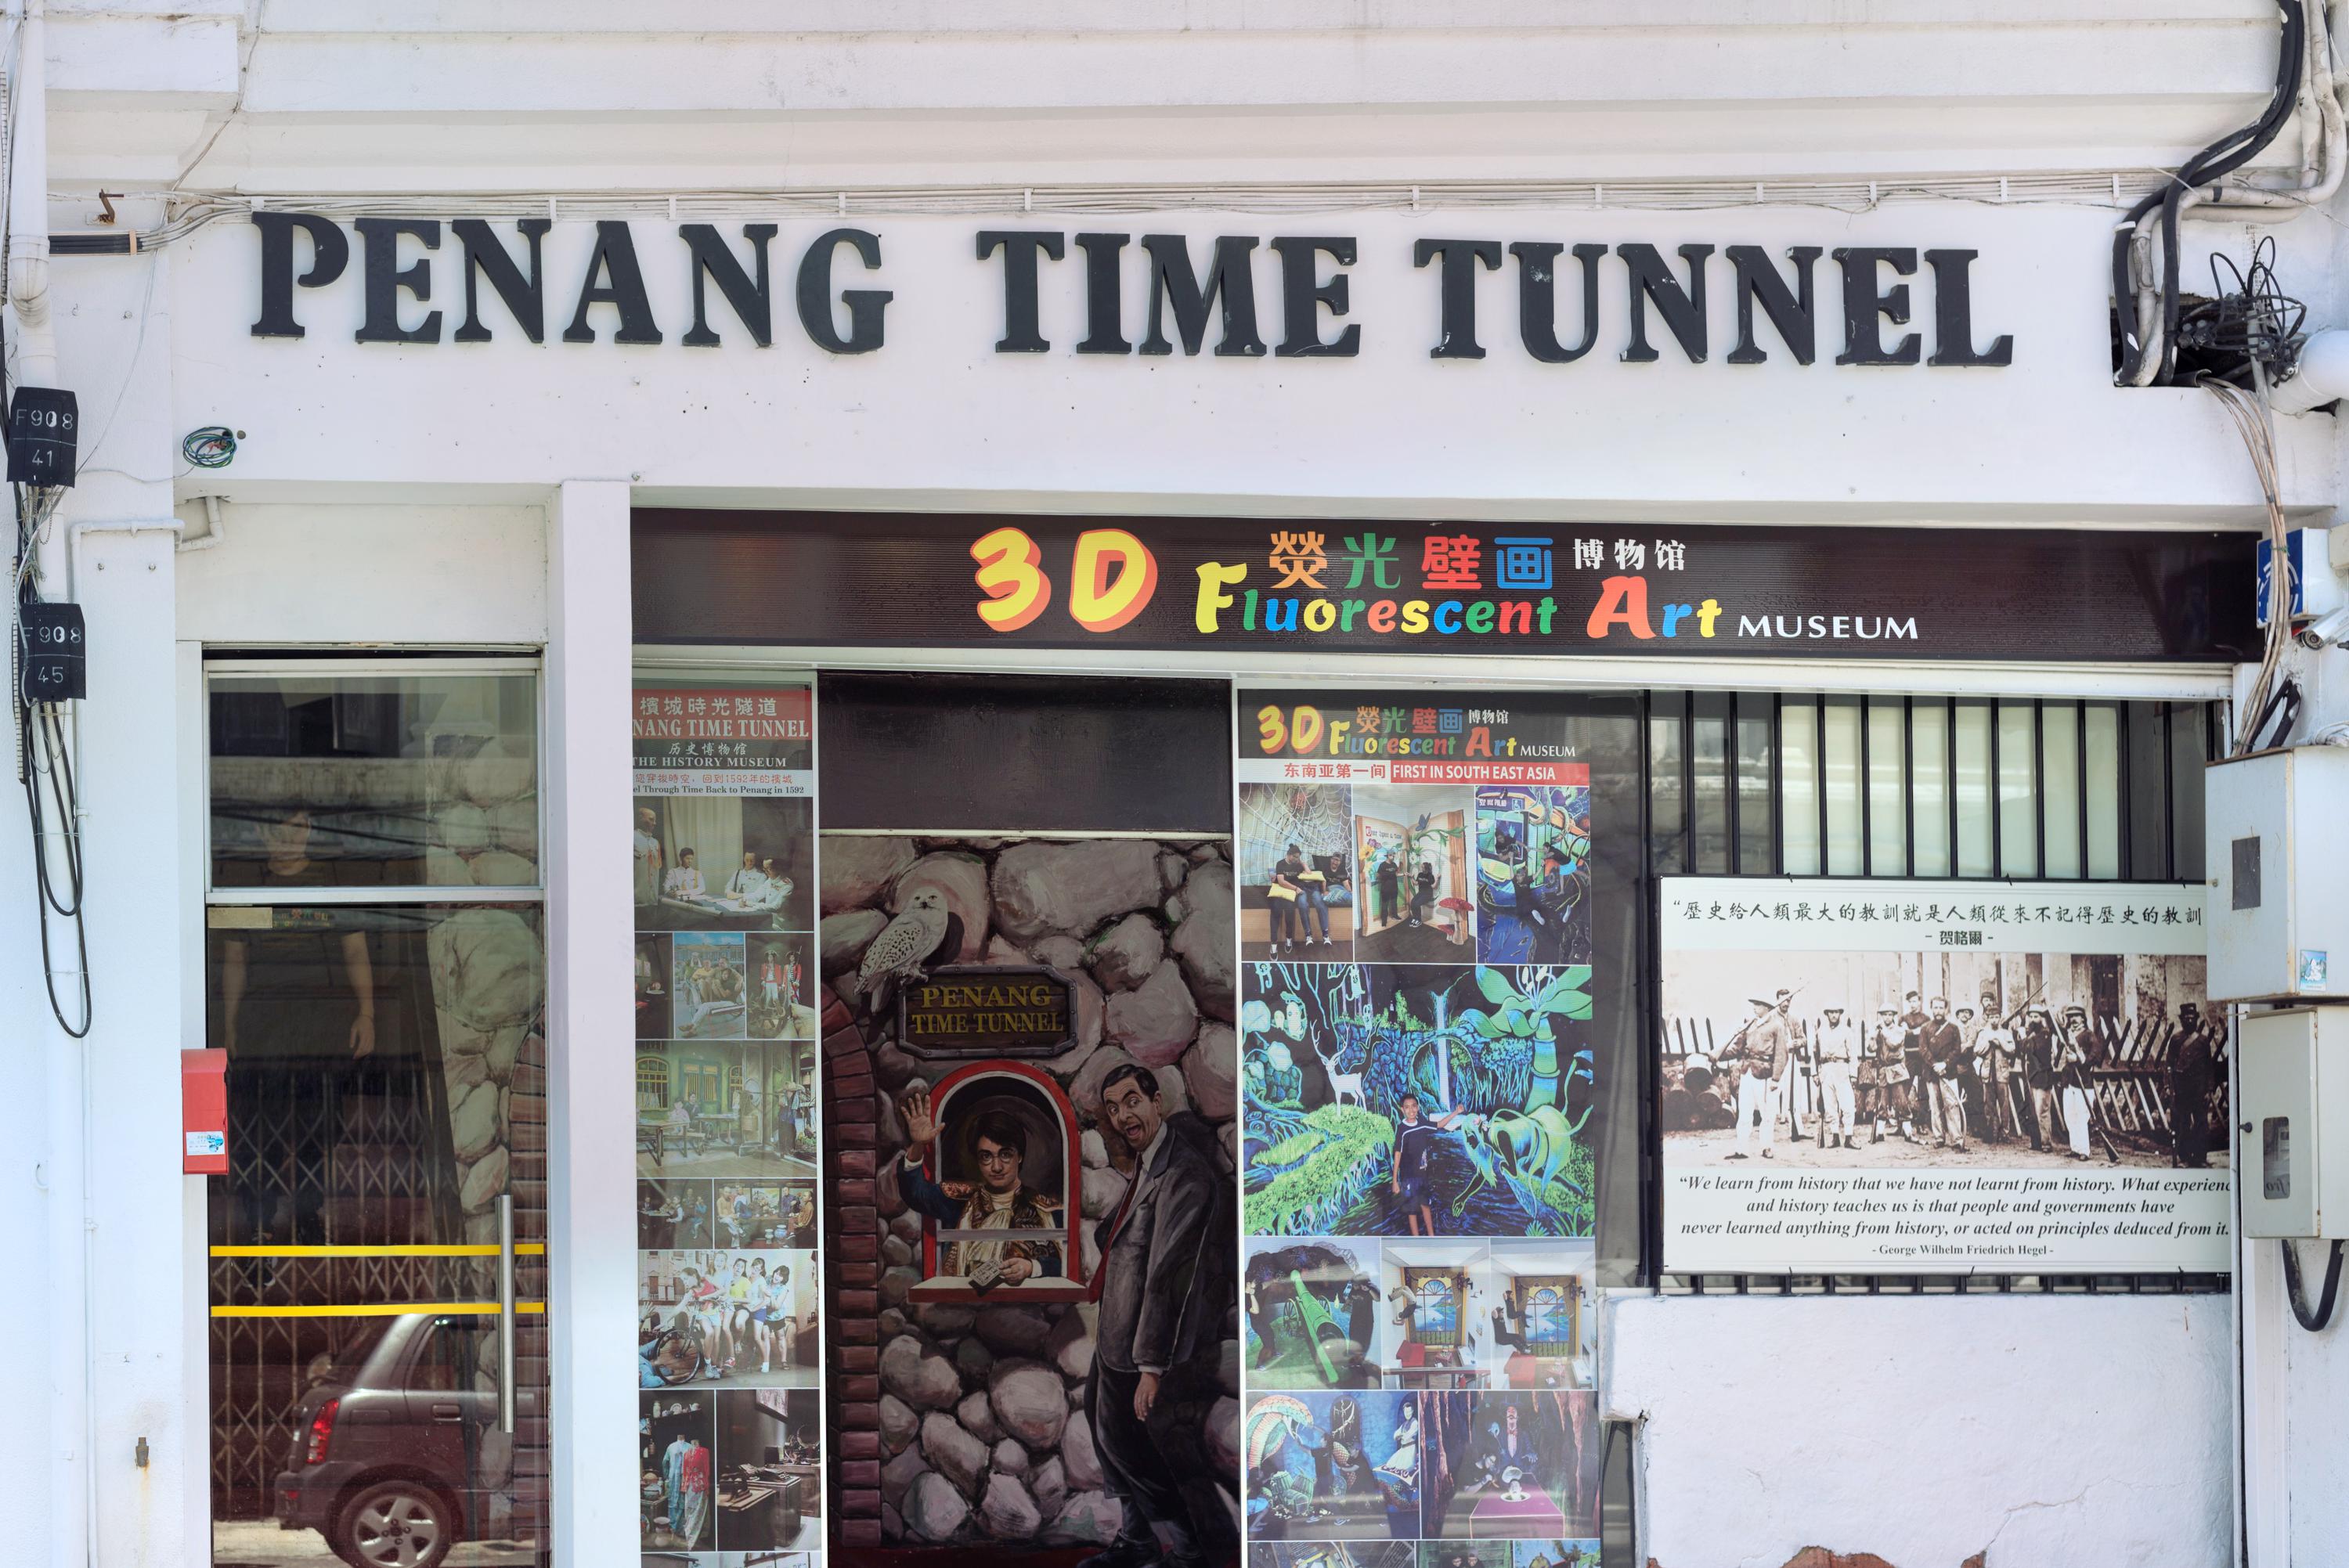 Tunnel penang time